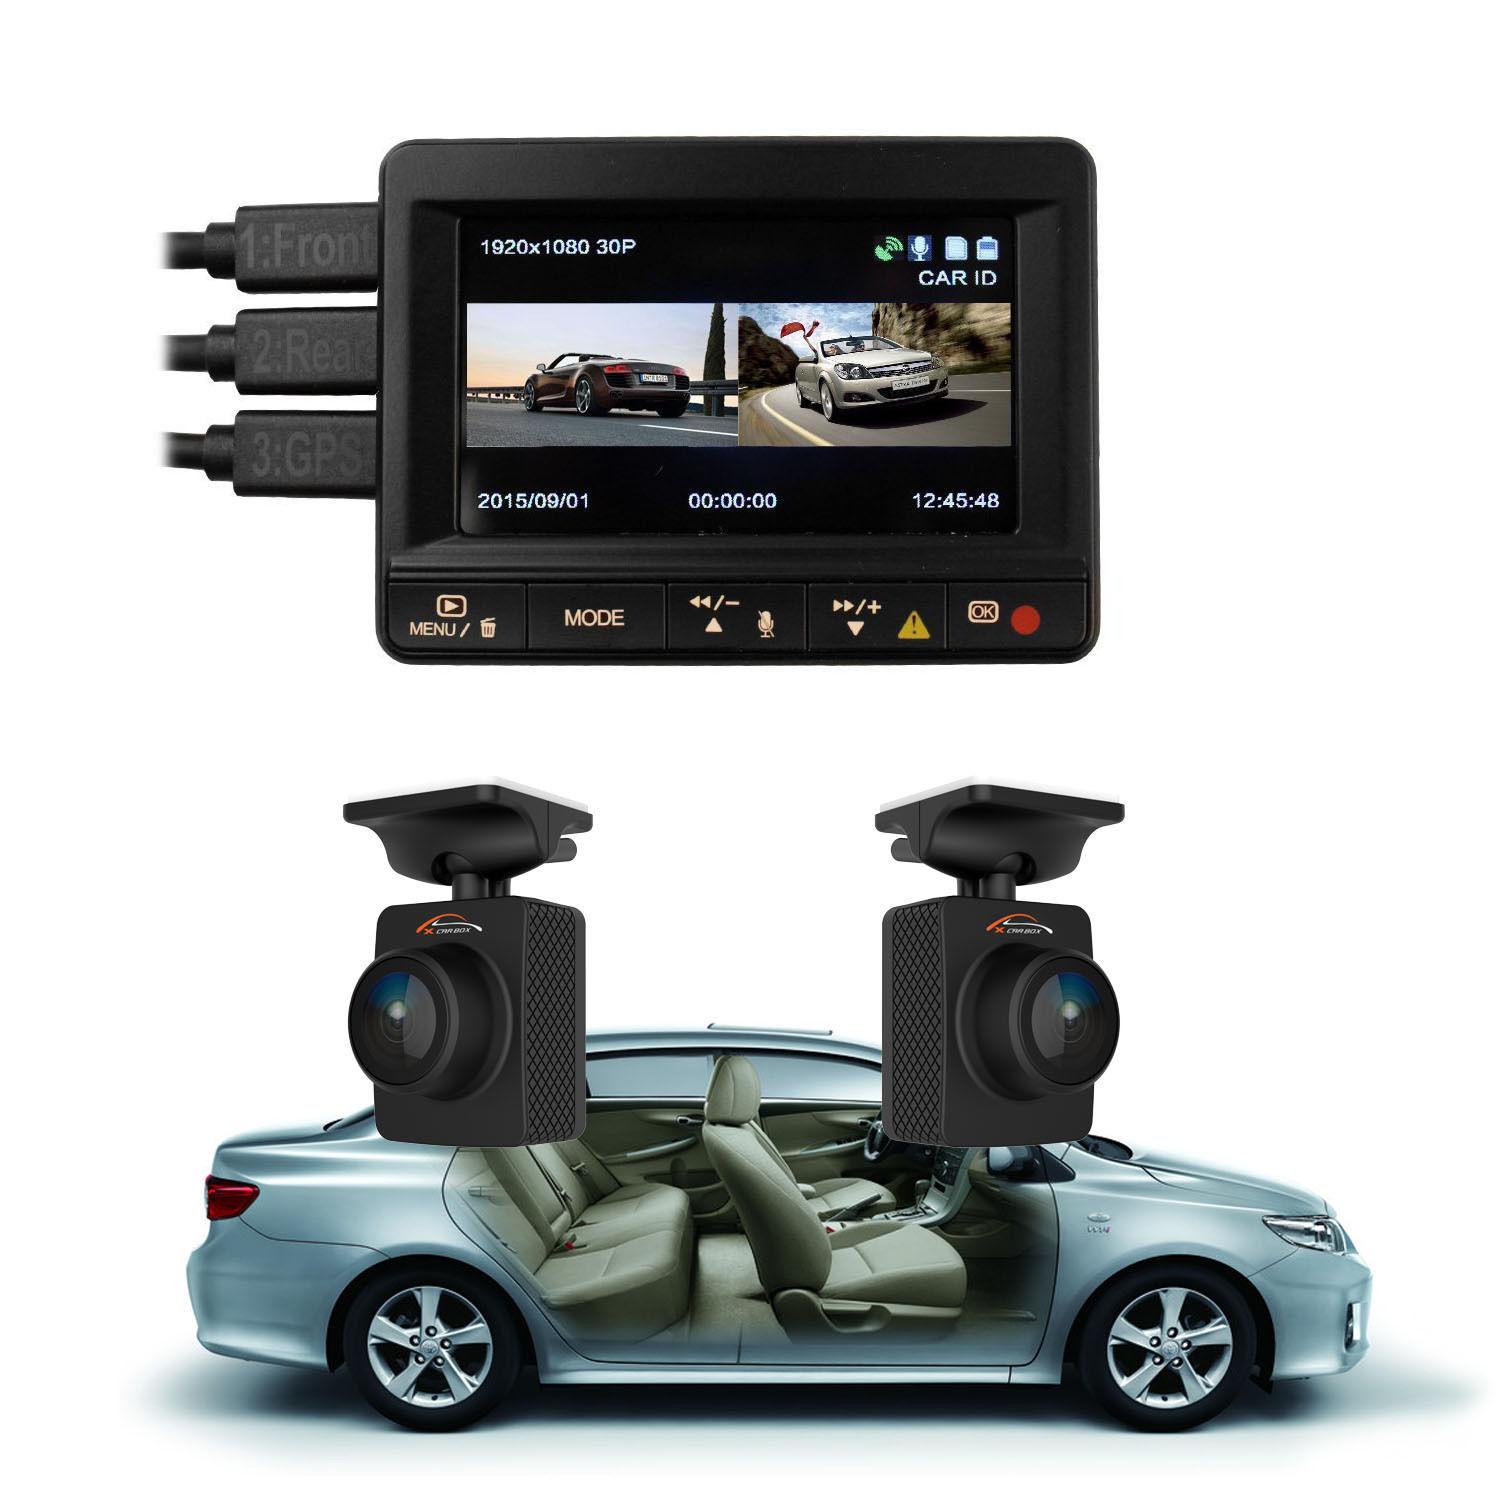 Camera for car interior